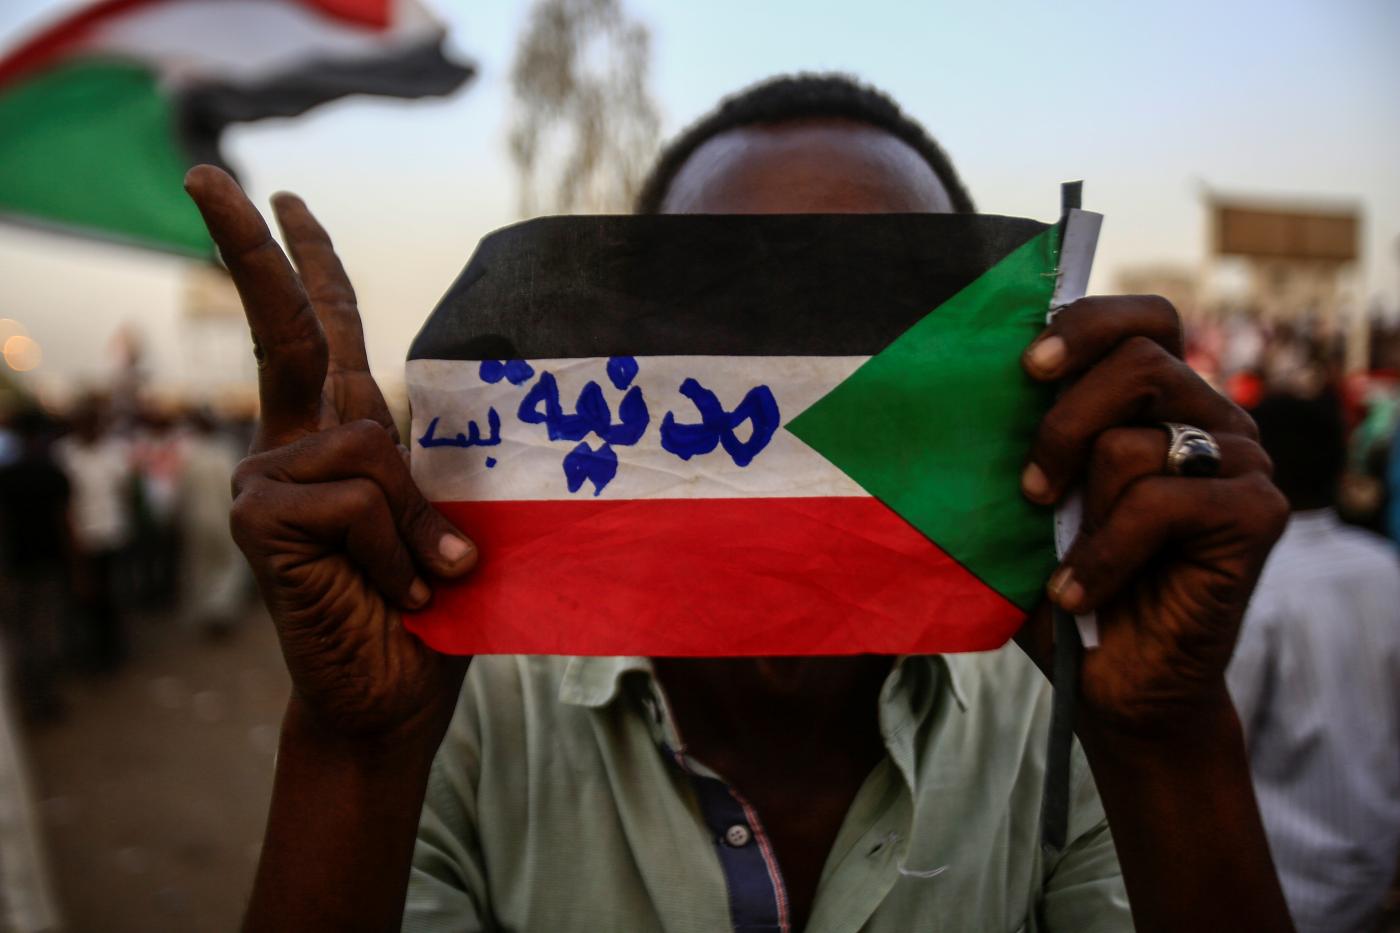 متظاهر سوداني يحمل علم البلاد مكتوب عليه "مدنية بس" خلال تظاهرة أمام القيادة المركزية للجيش، الخرطوم، 2 مايو 2019. وكالة الأنباء الفرنسية.